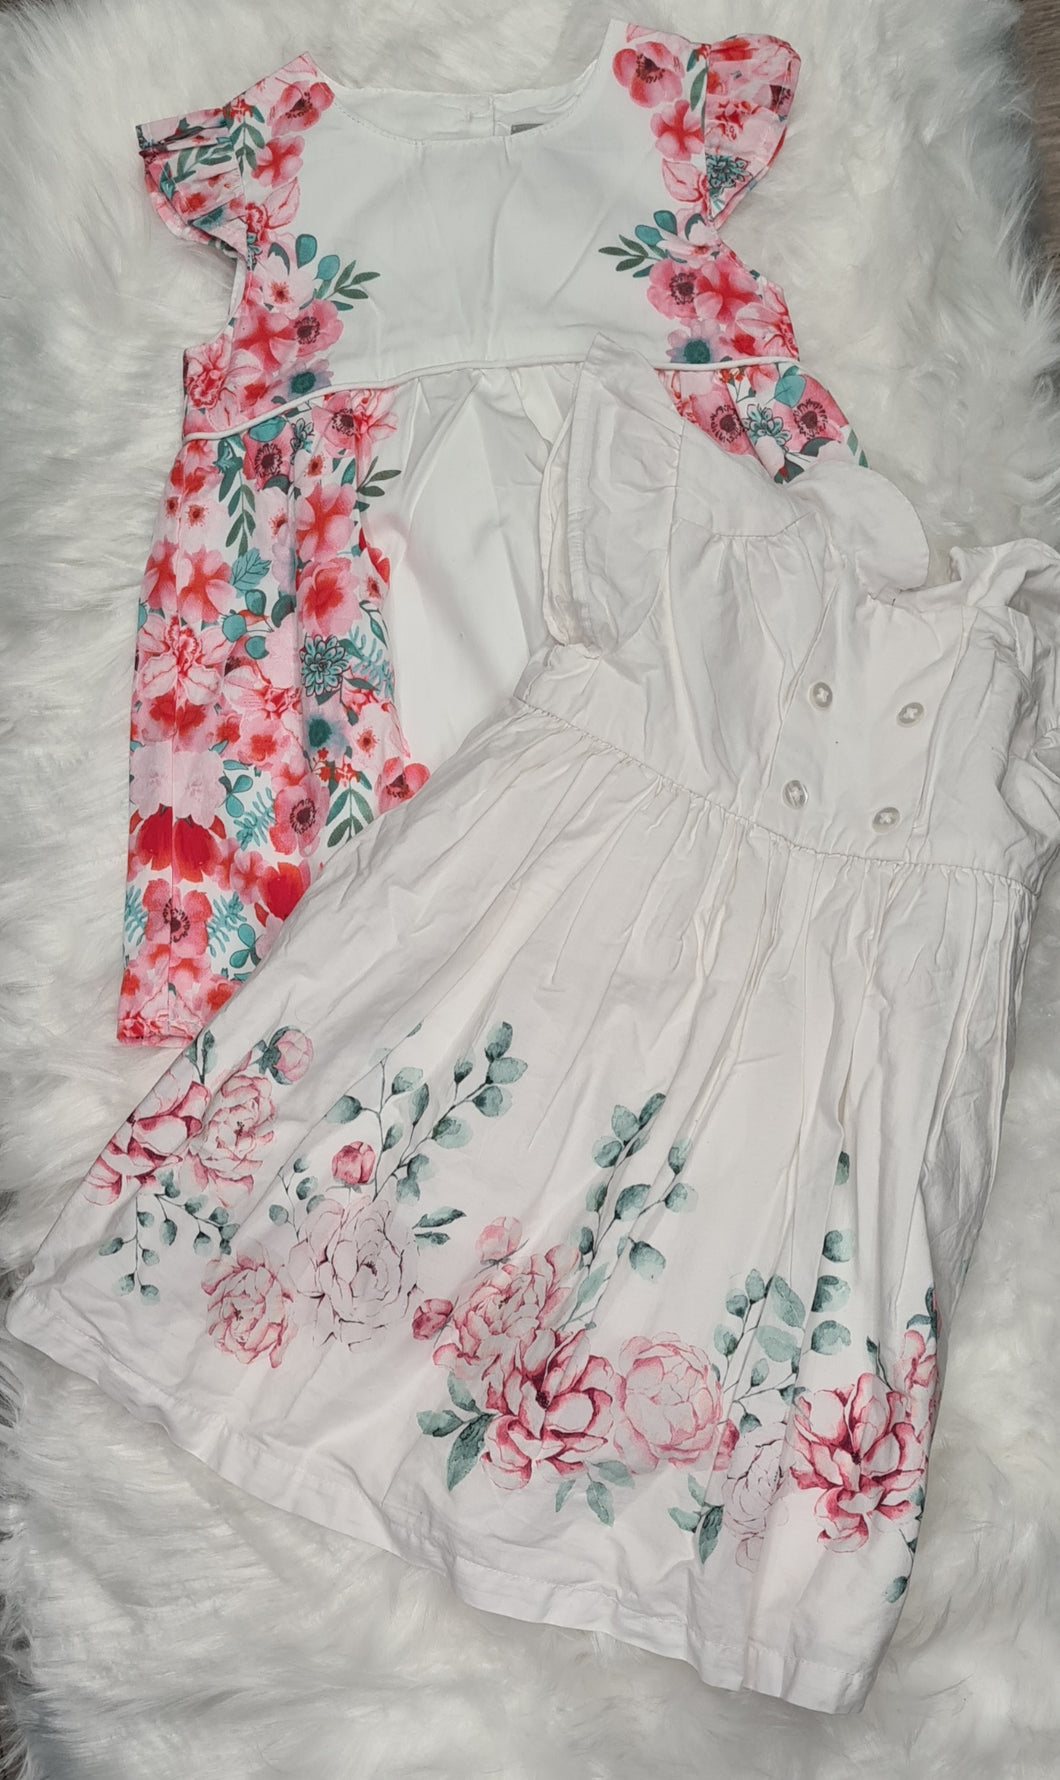 Girls 9-12 Months - White Short Sleeve Dresses - 2 Set